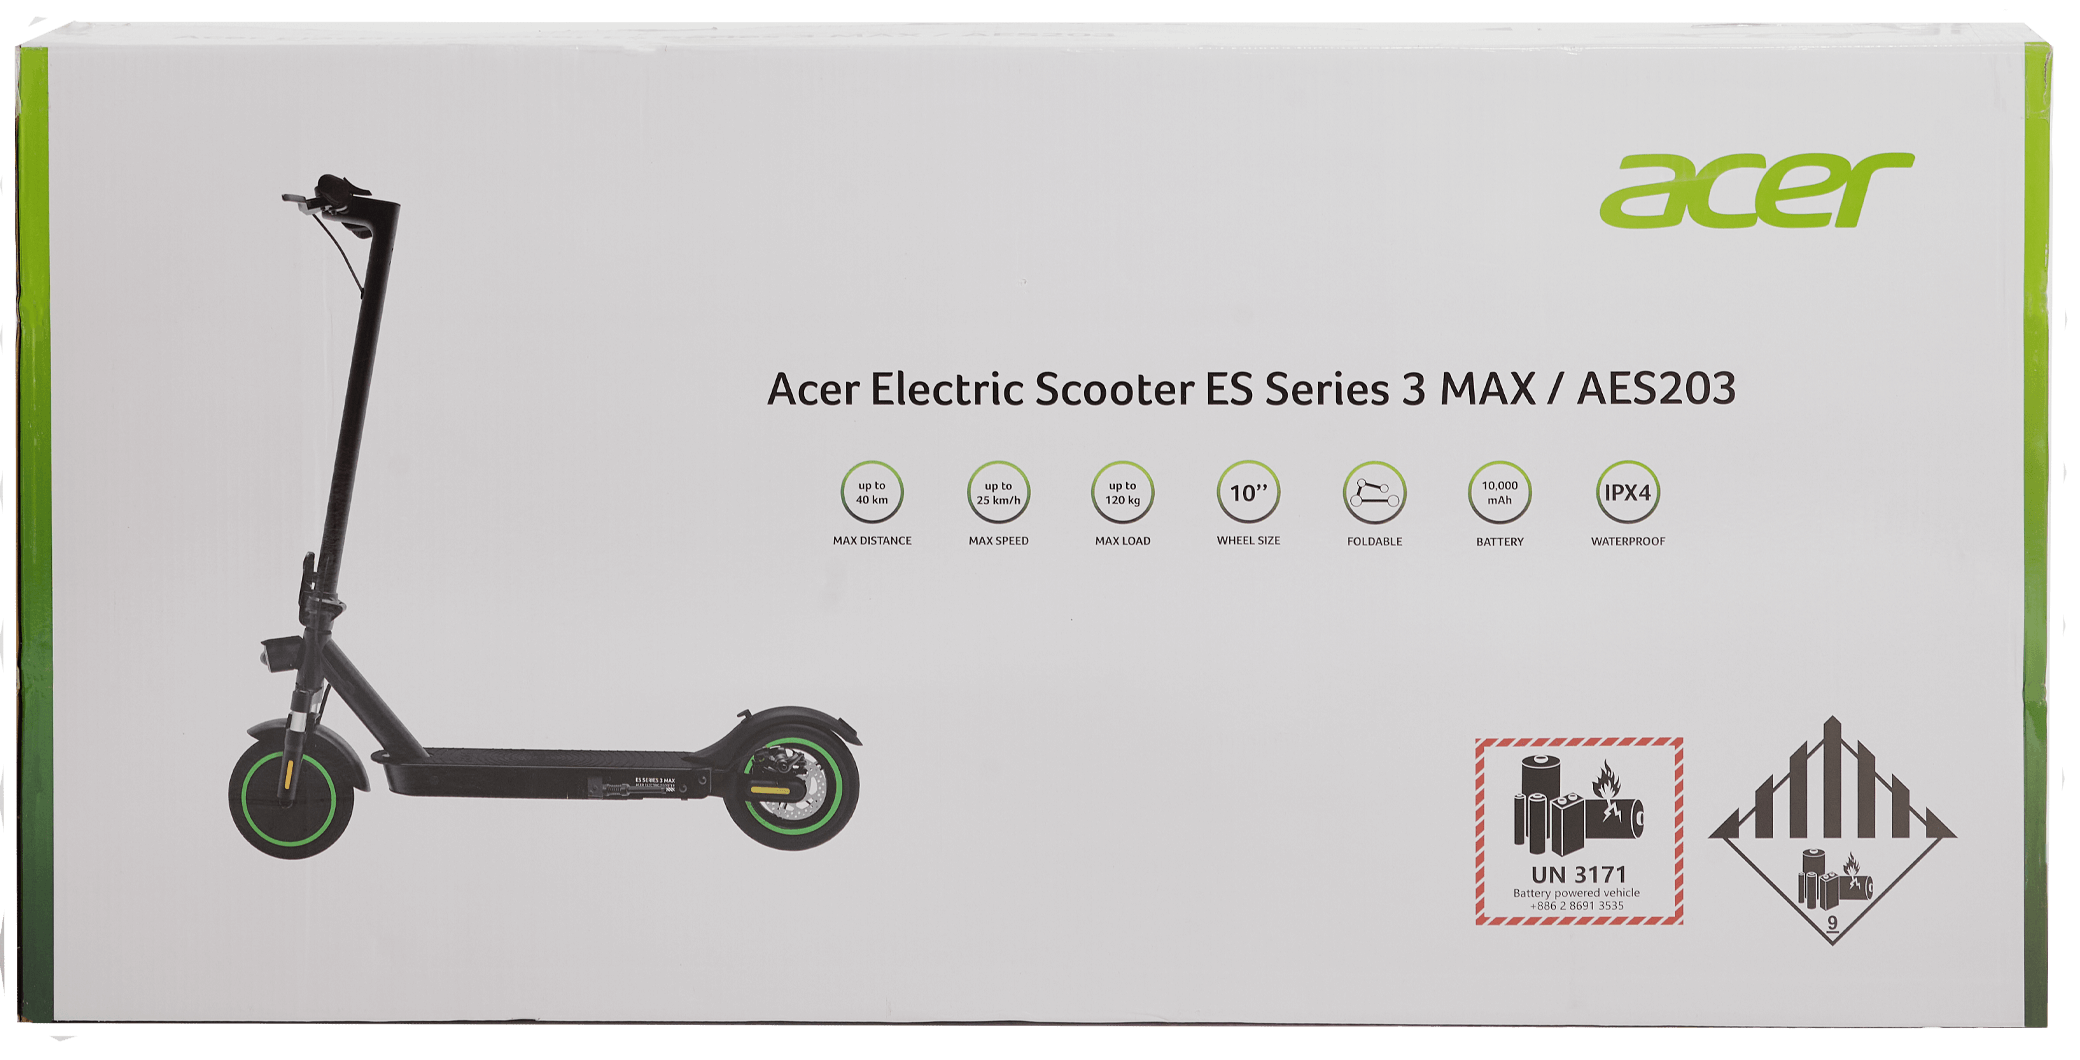 Электросамокат Acer es Series 3. Aes203 электросамокат Acer. Электрический самокат Acer aes103. Электросамокат Acer aes001. Электросамокат es series 3